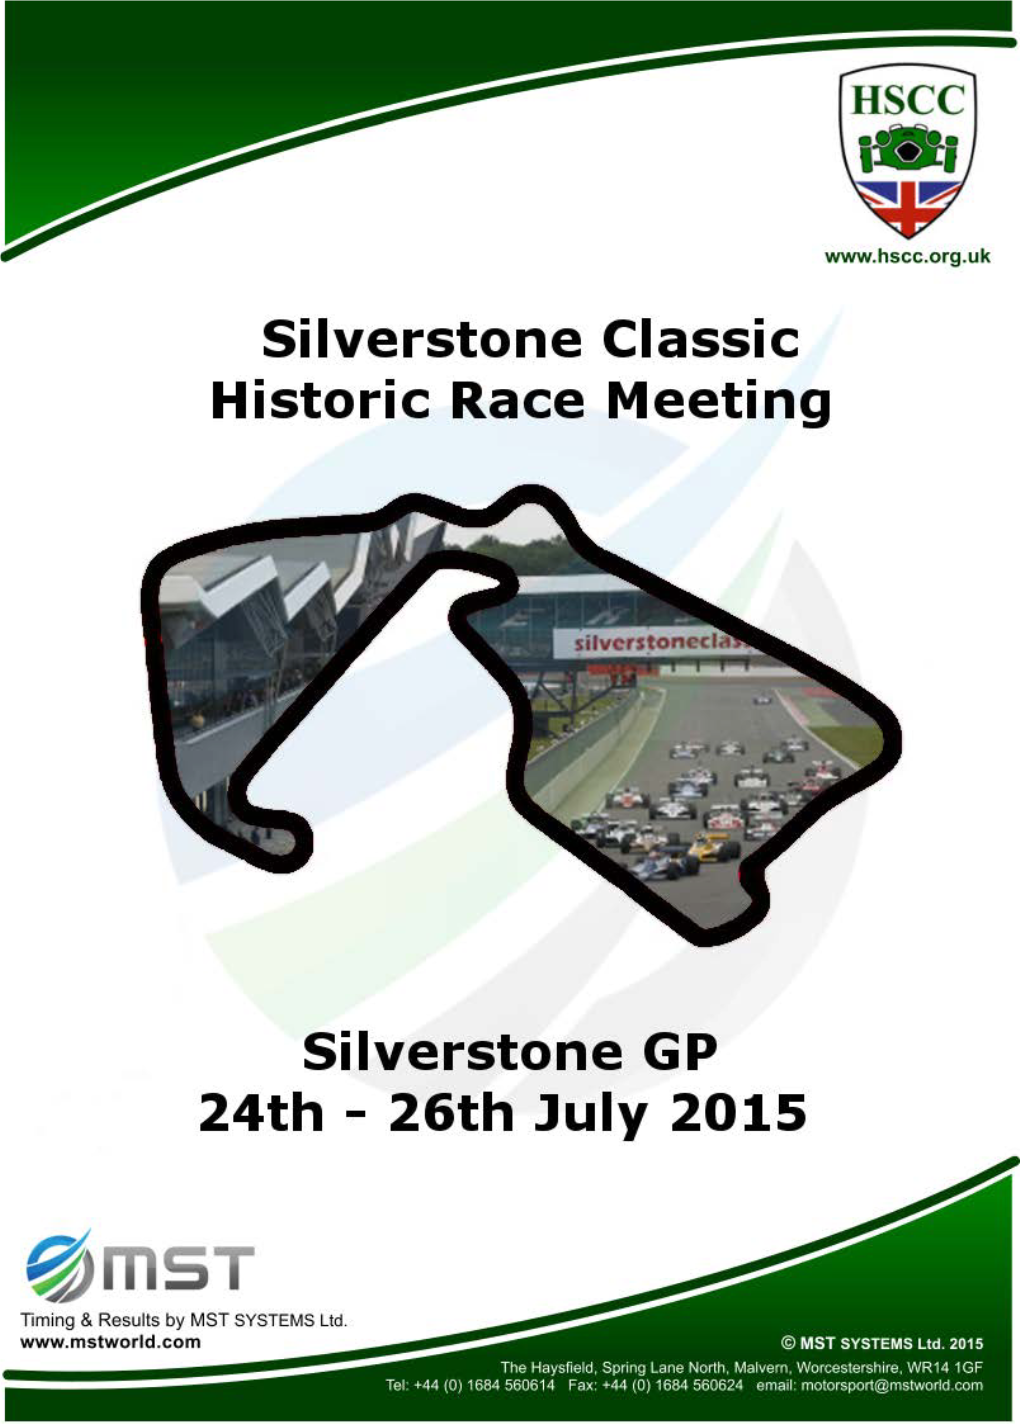 Silverstone, July 24-26